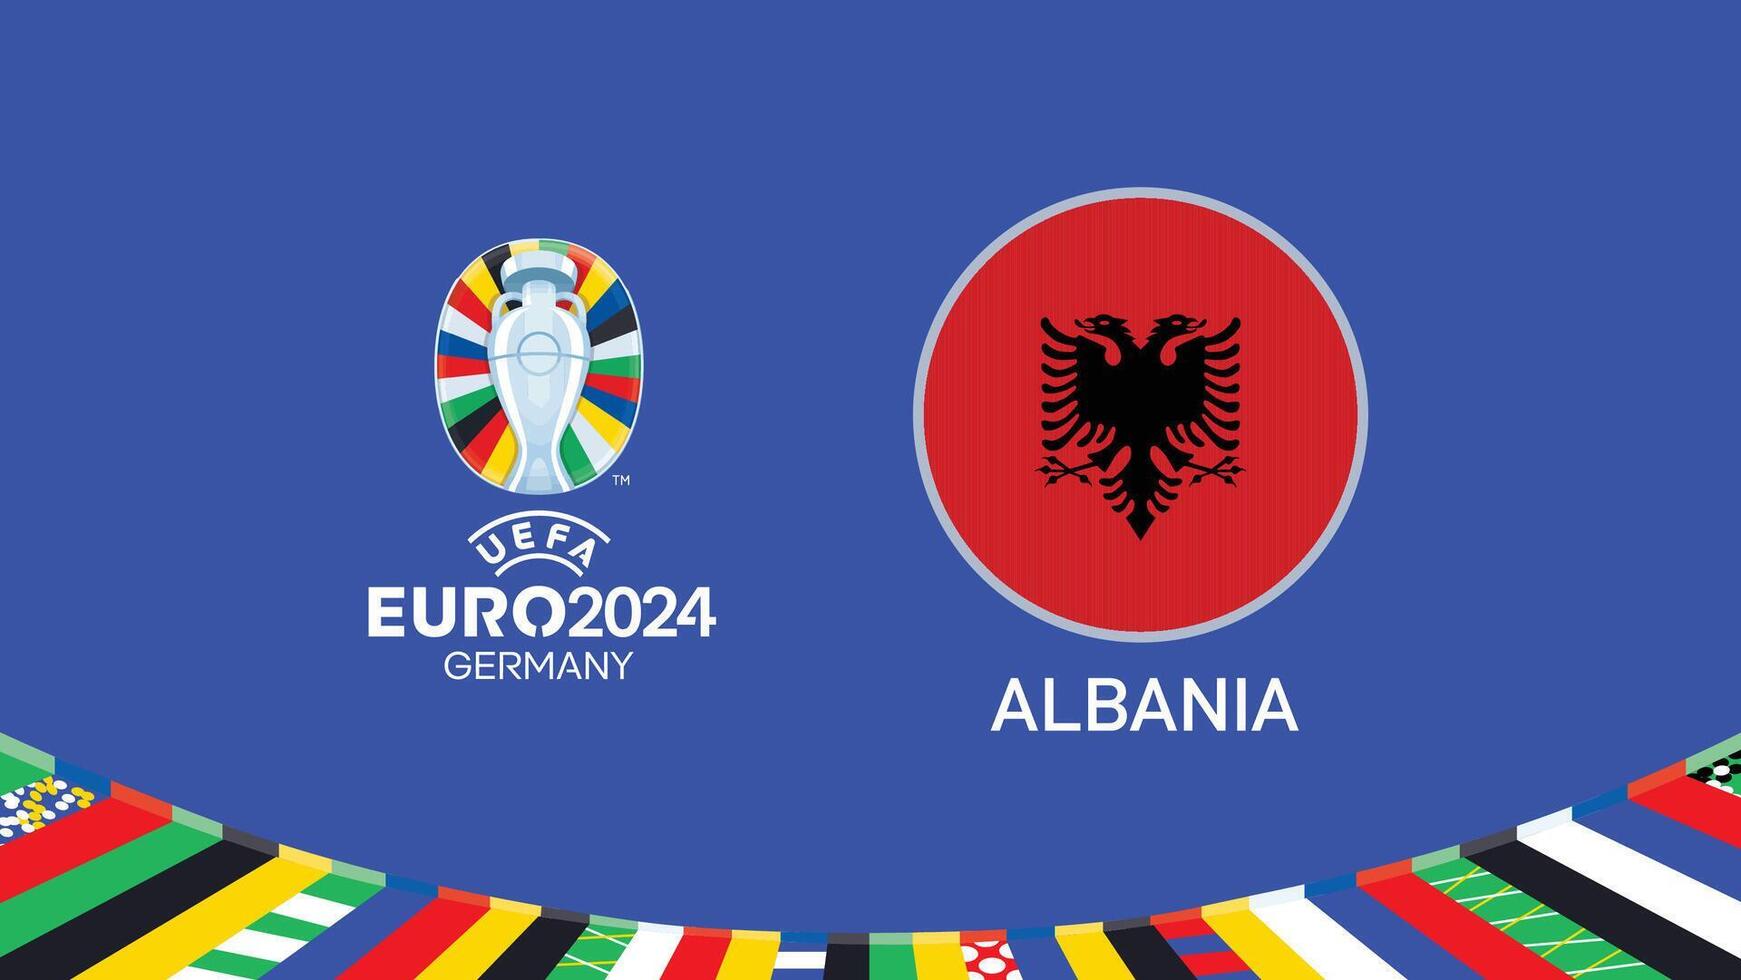 euro 2024 Allemagne Albanie drapeau emblème équipes conception avec officiel symbole logo abstrait des pays européen Football illustration vecteur